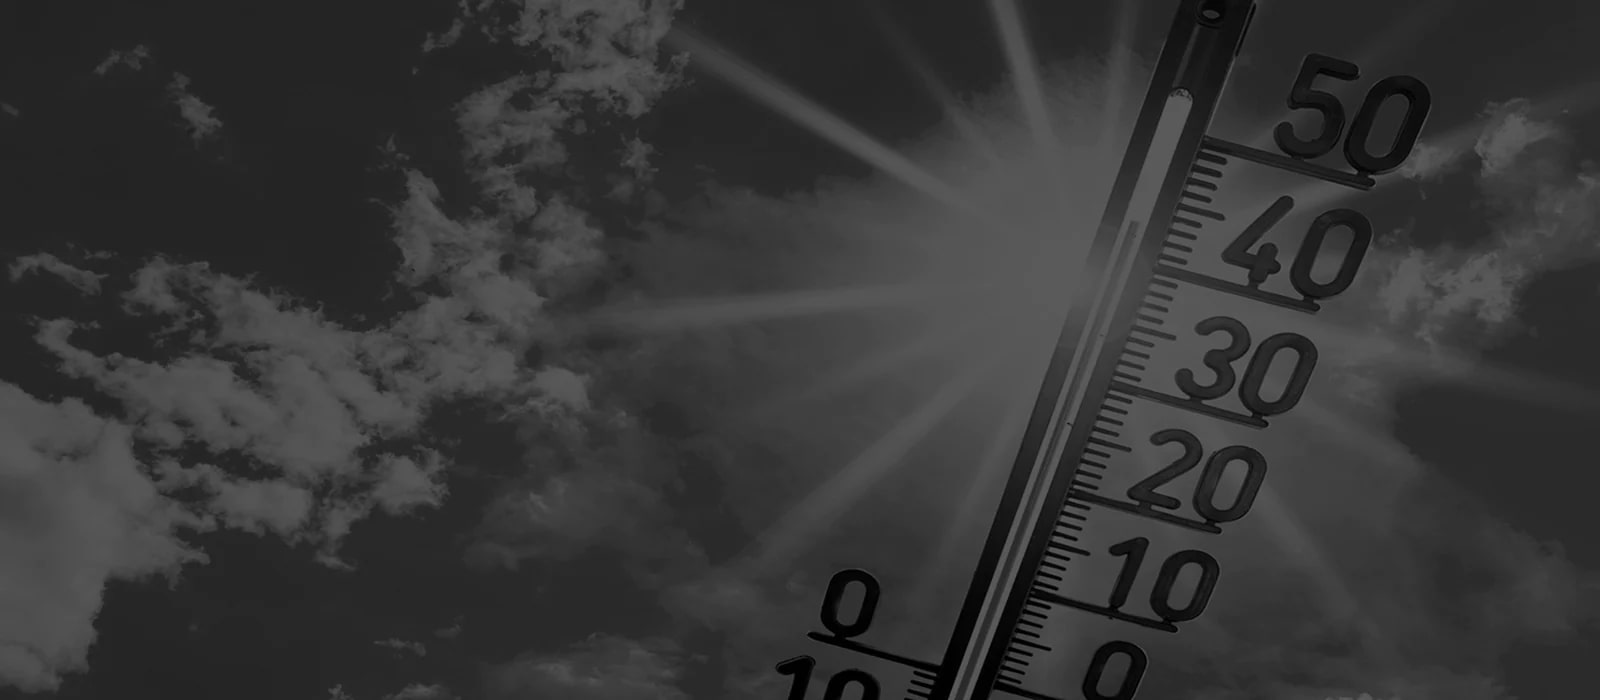 صورة لمقياس حرارة حيث تزيد درجة الحرارة عن 40 درجة مئوية تحت أشعة الشمس.